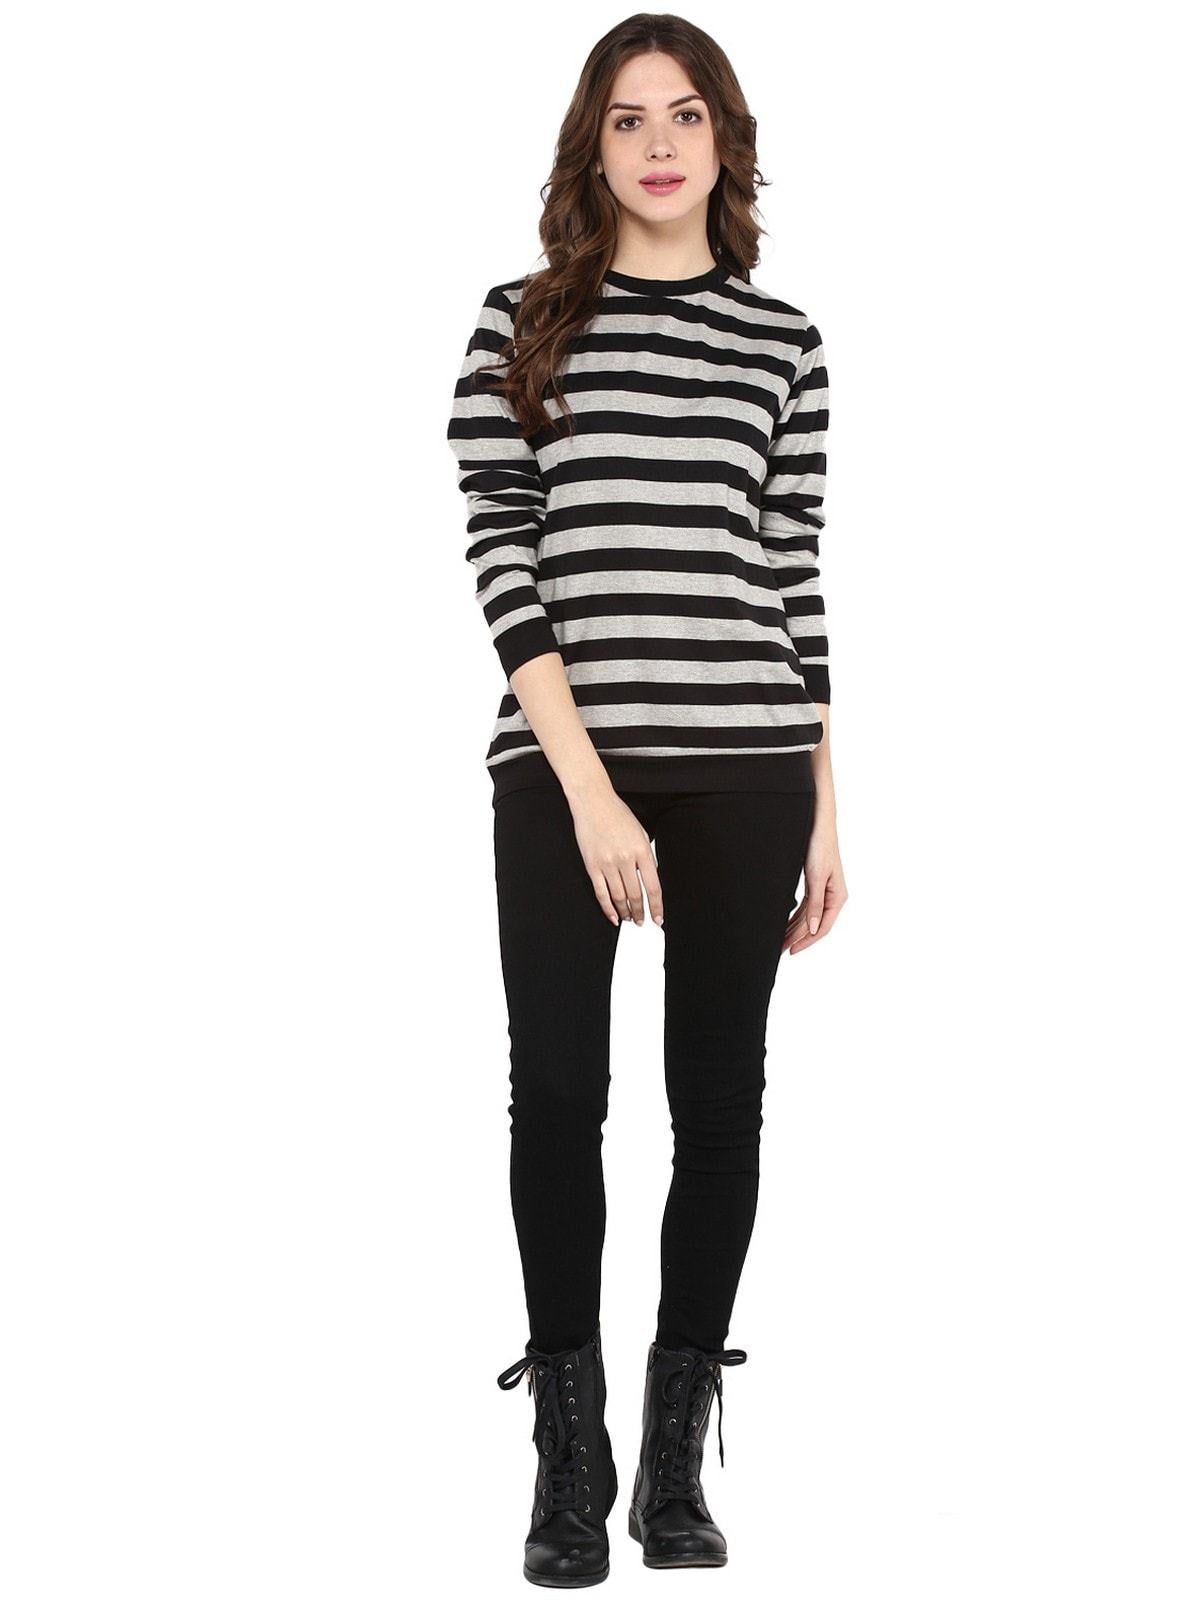 Women's Stripe Round Neck Sweater - Pannkh